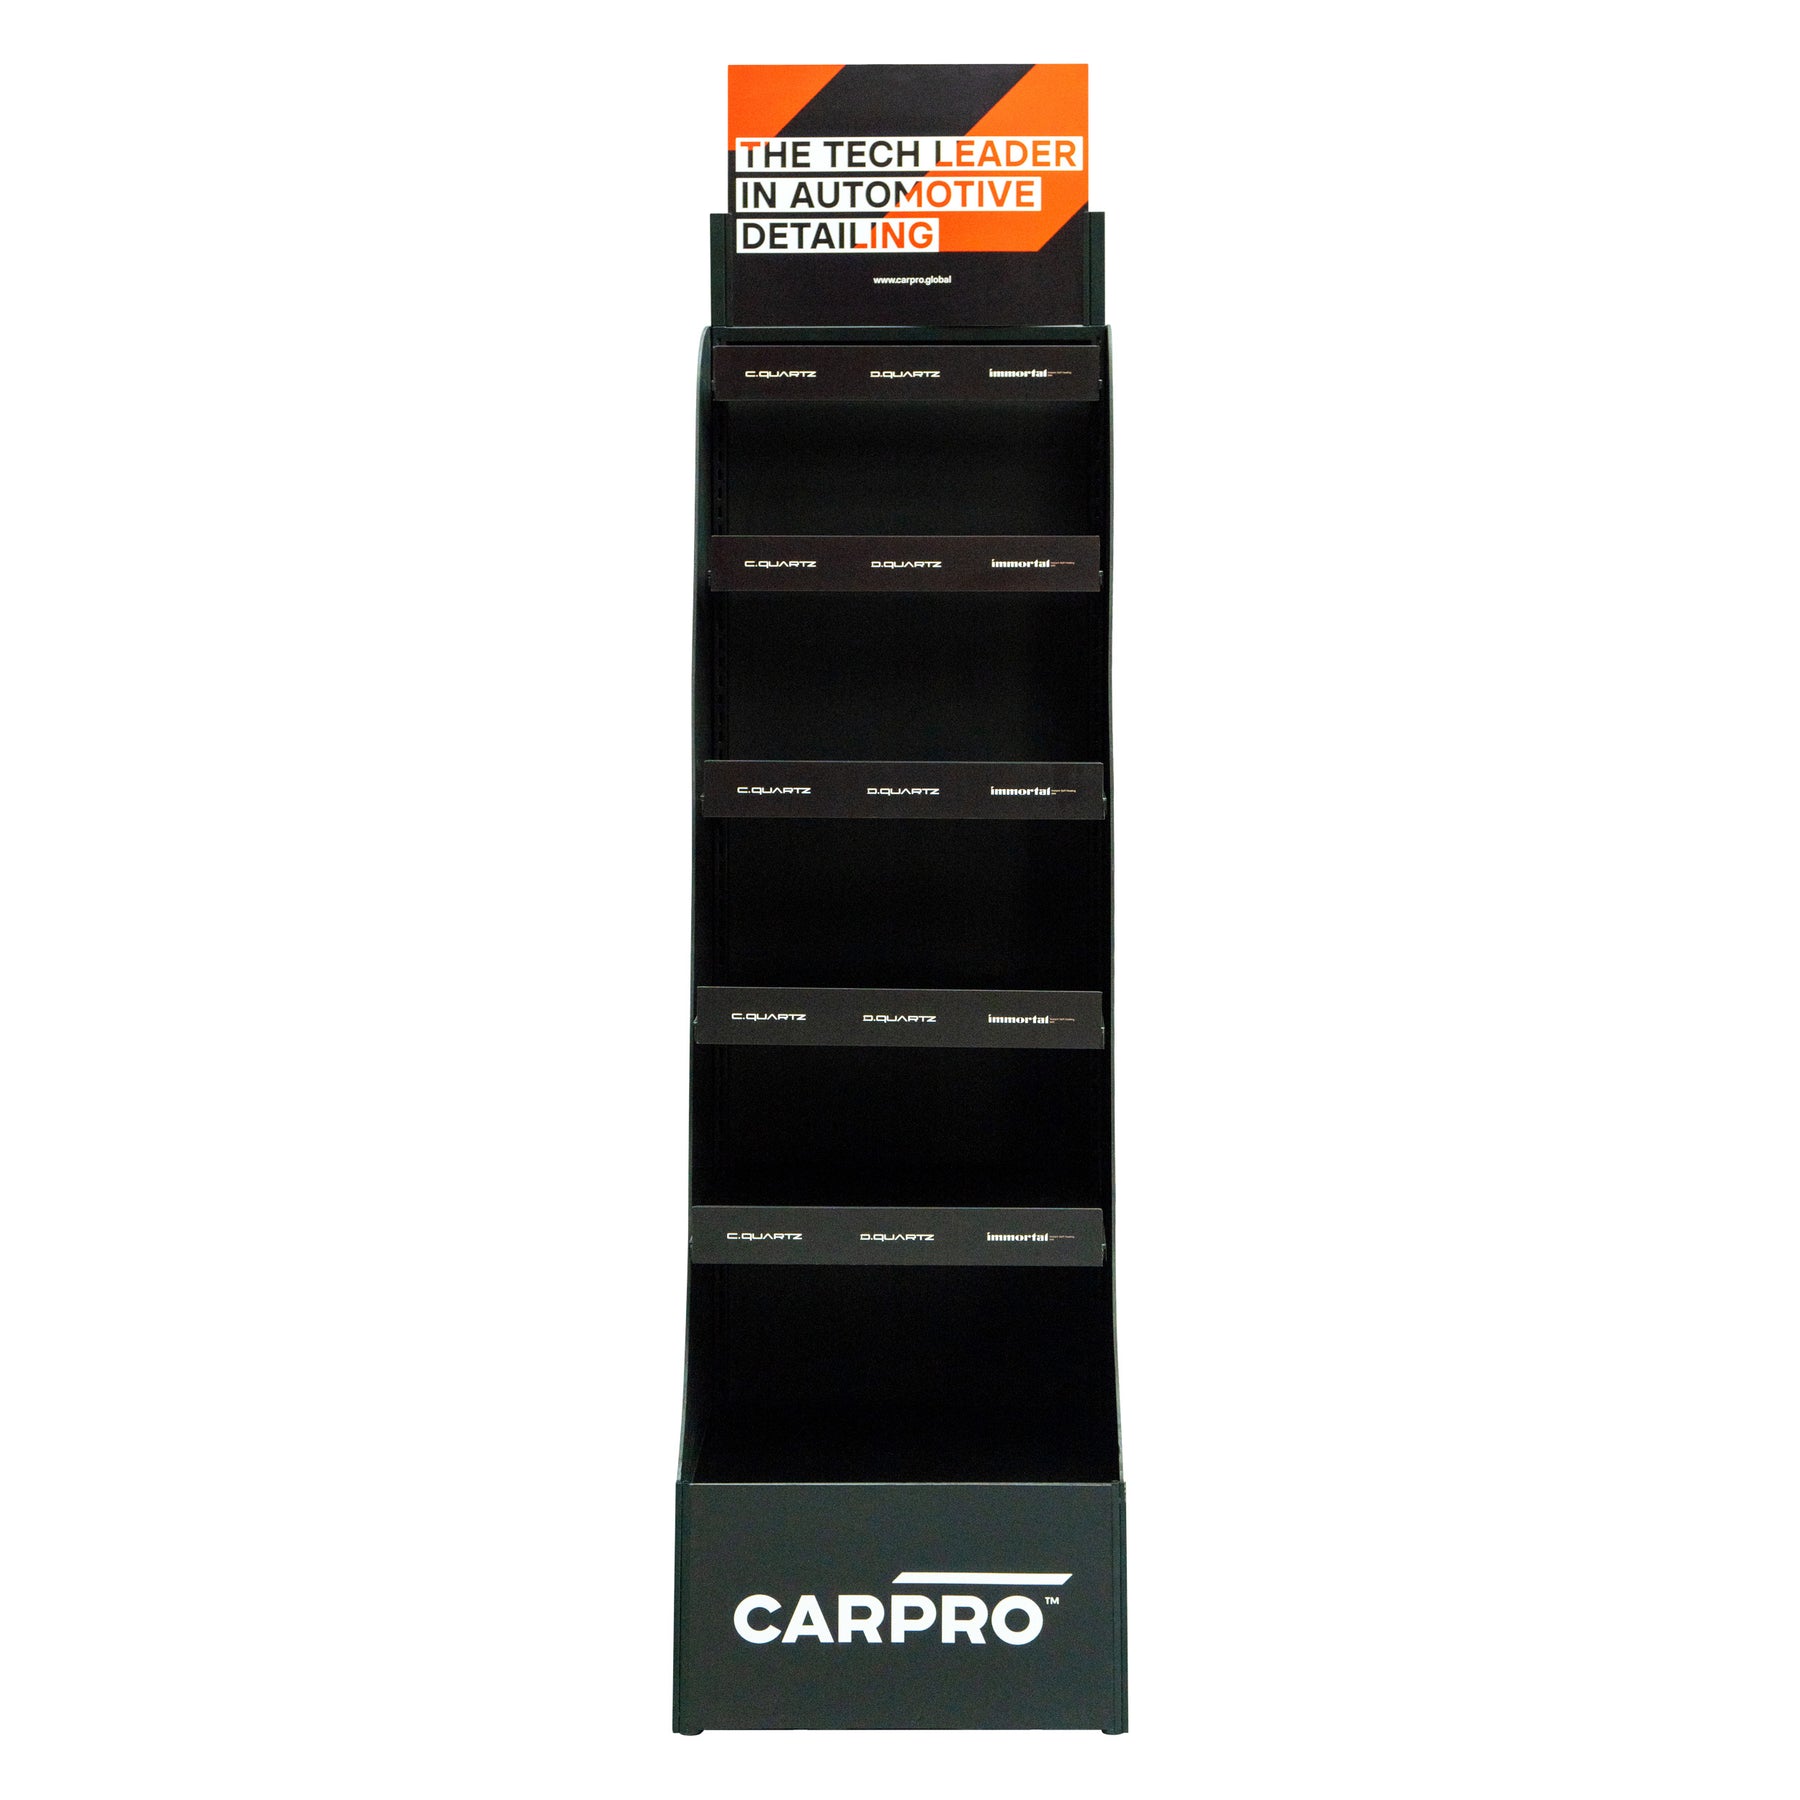 Espositore a pavimento CARPRO nero, ideale per organizzare e mostrare prodotti di detailing in modo professionale, su sfondo bianco.